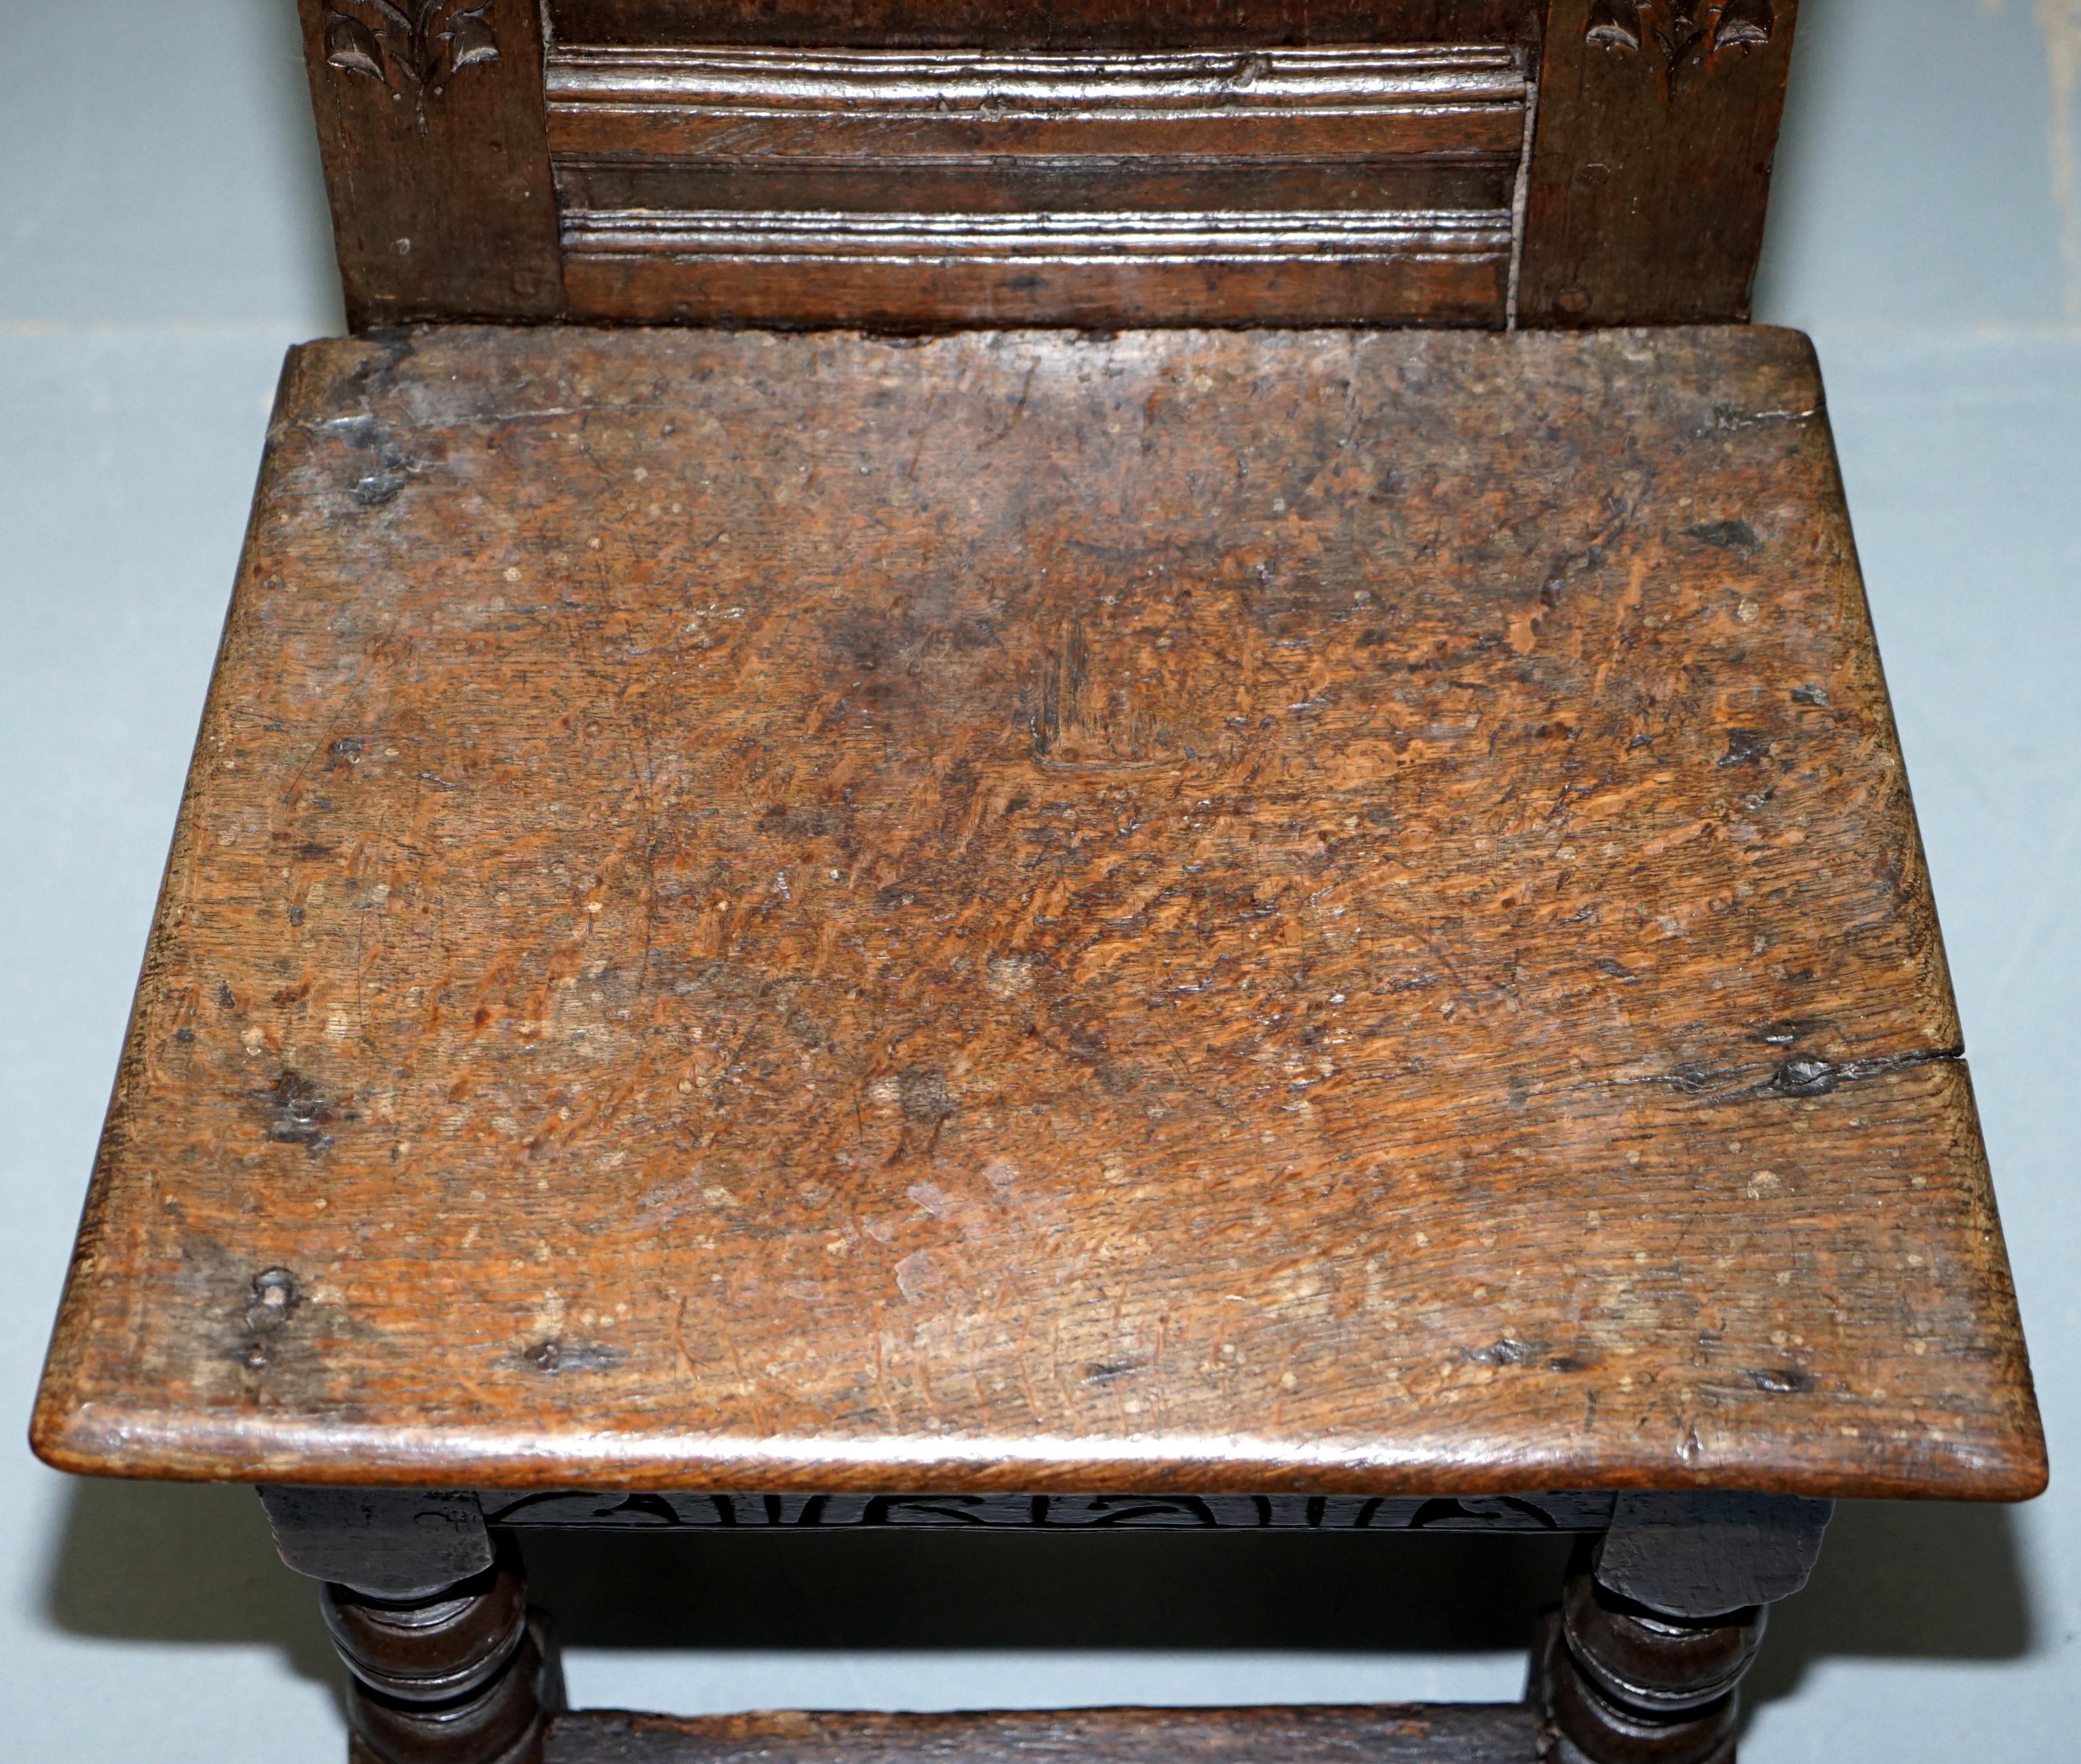 Britannique Rare circa 1760 Fruit Wood Wood Chair Nicely Carved Quite Small 18th Century Example (Chaise en bois fruitier joliment sculptée) en vente